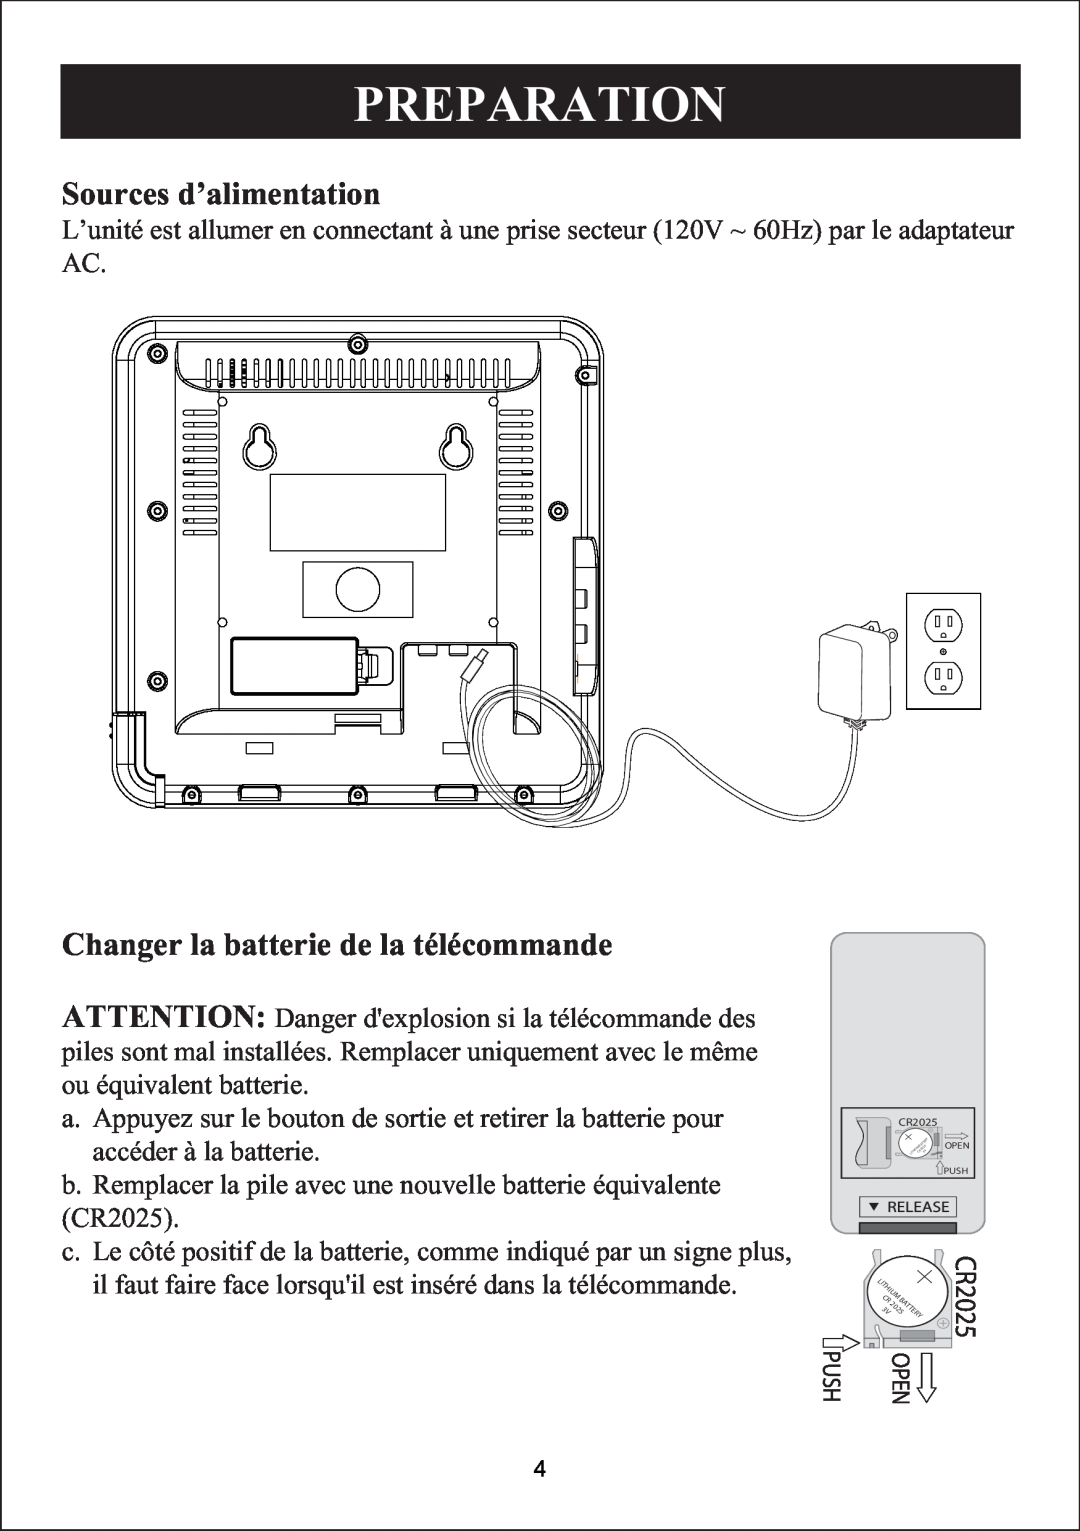 Sylvania SIP3019 manual Sources d’alimentation, Changer la batterie de la télécommande, Preparation 